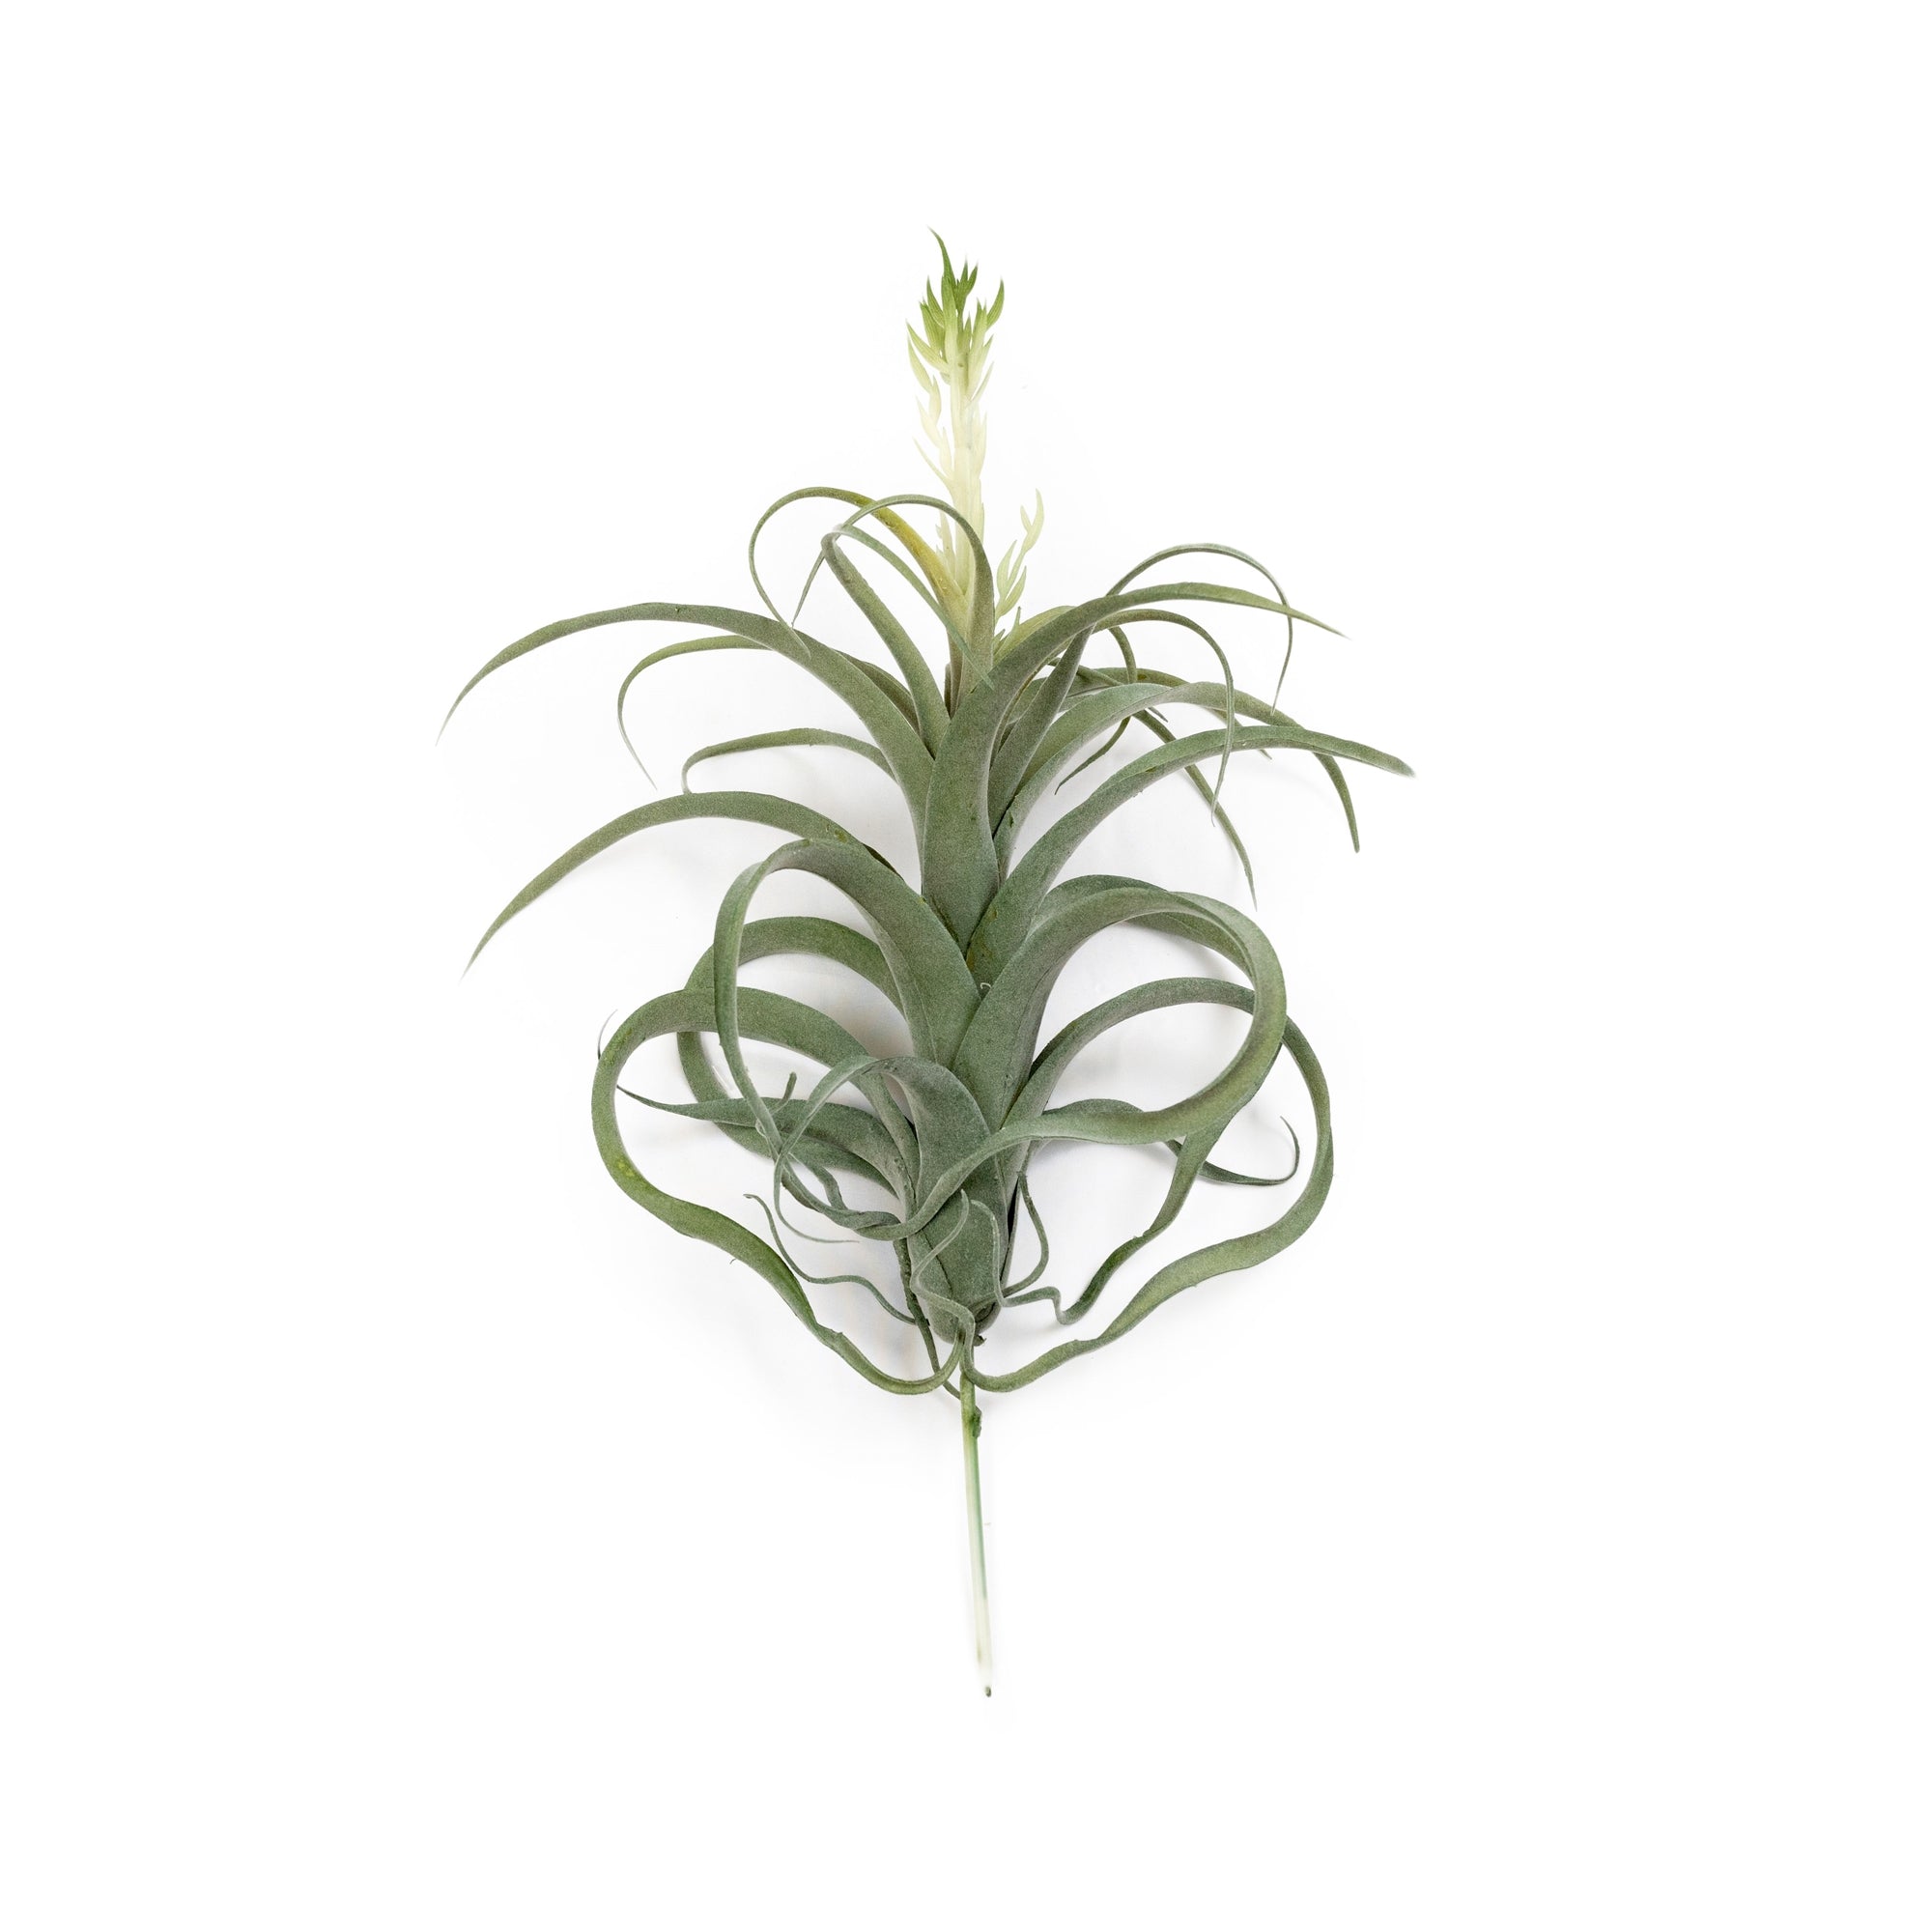 Pineapple Grass - 10"x8.5"